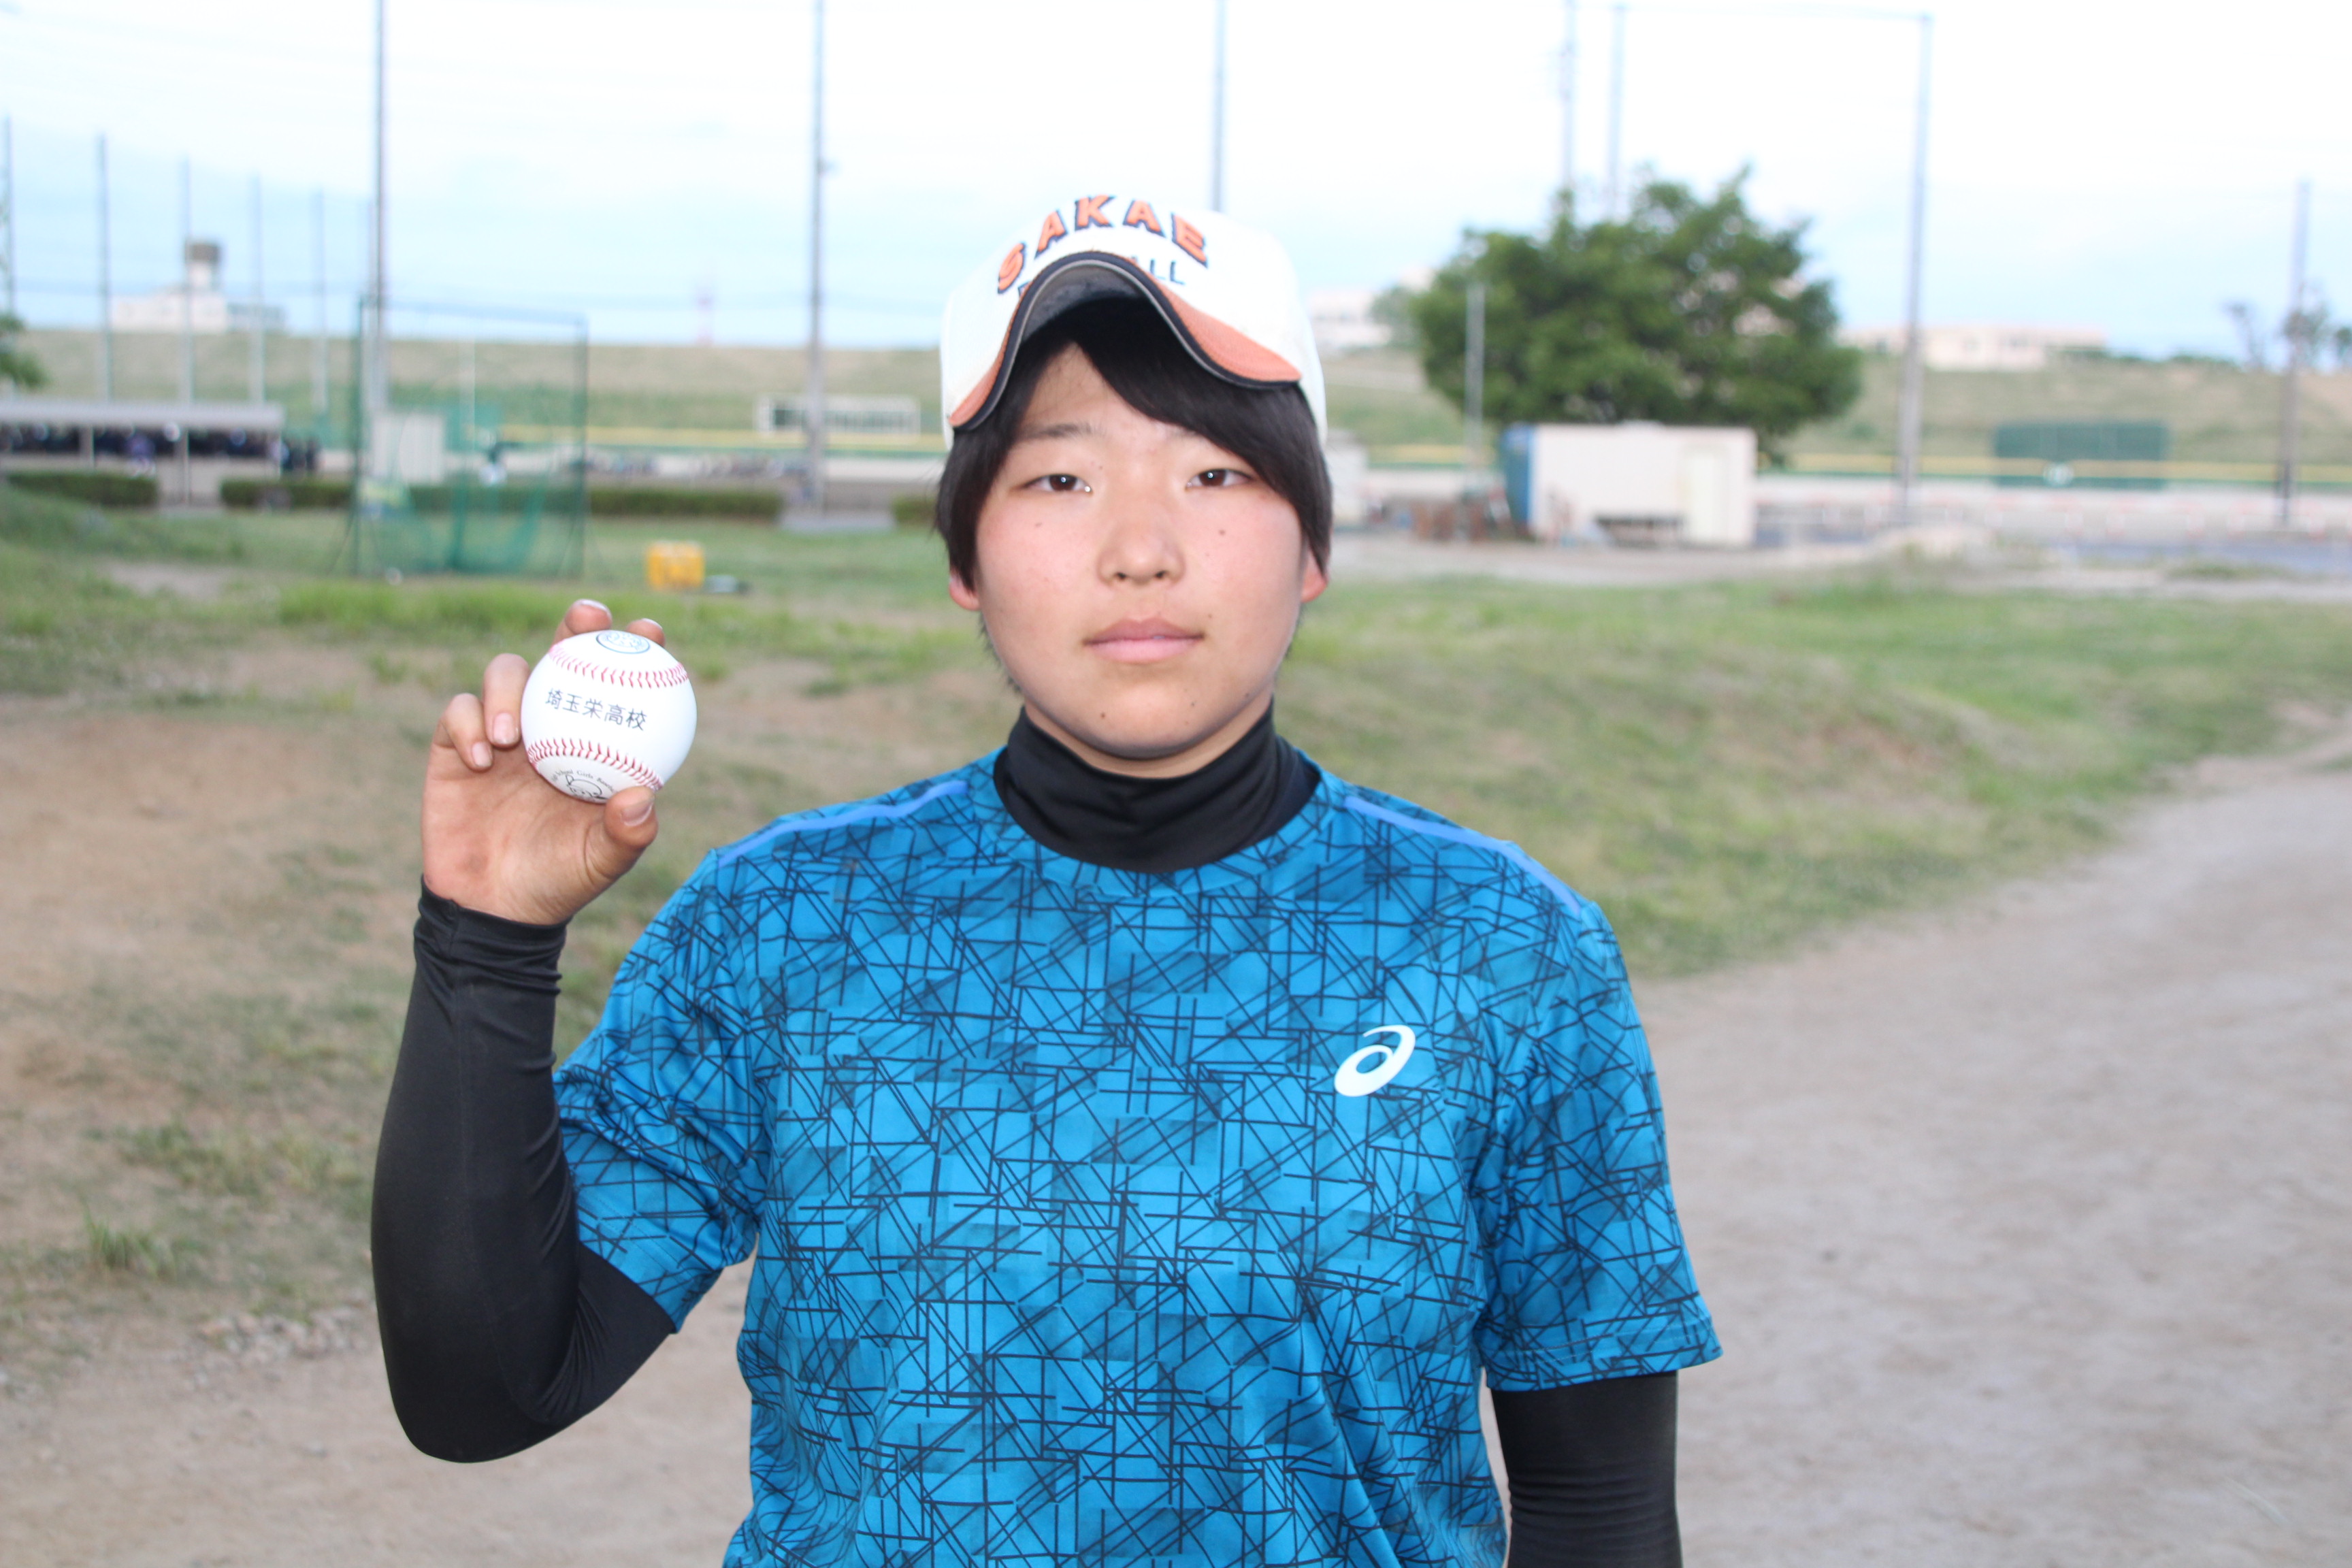 笑って女子高校野球生活を終わるために 藤田捺己 埼玉栄 が目指す実践派スラッガーへの道のり 野球女子 Vol 7 野球女子 Baseball Gate